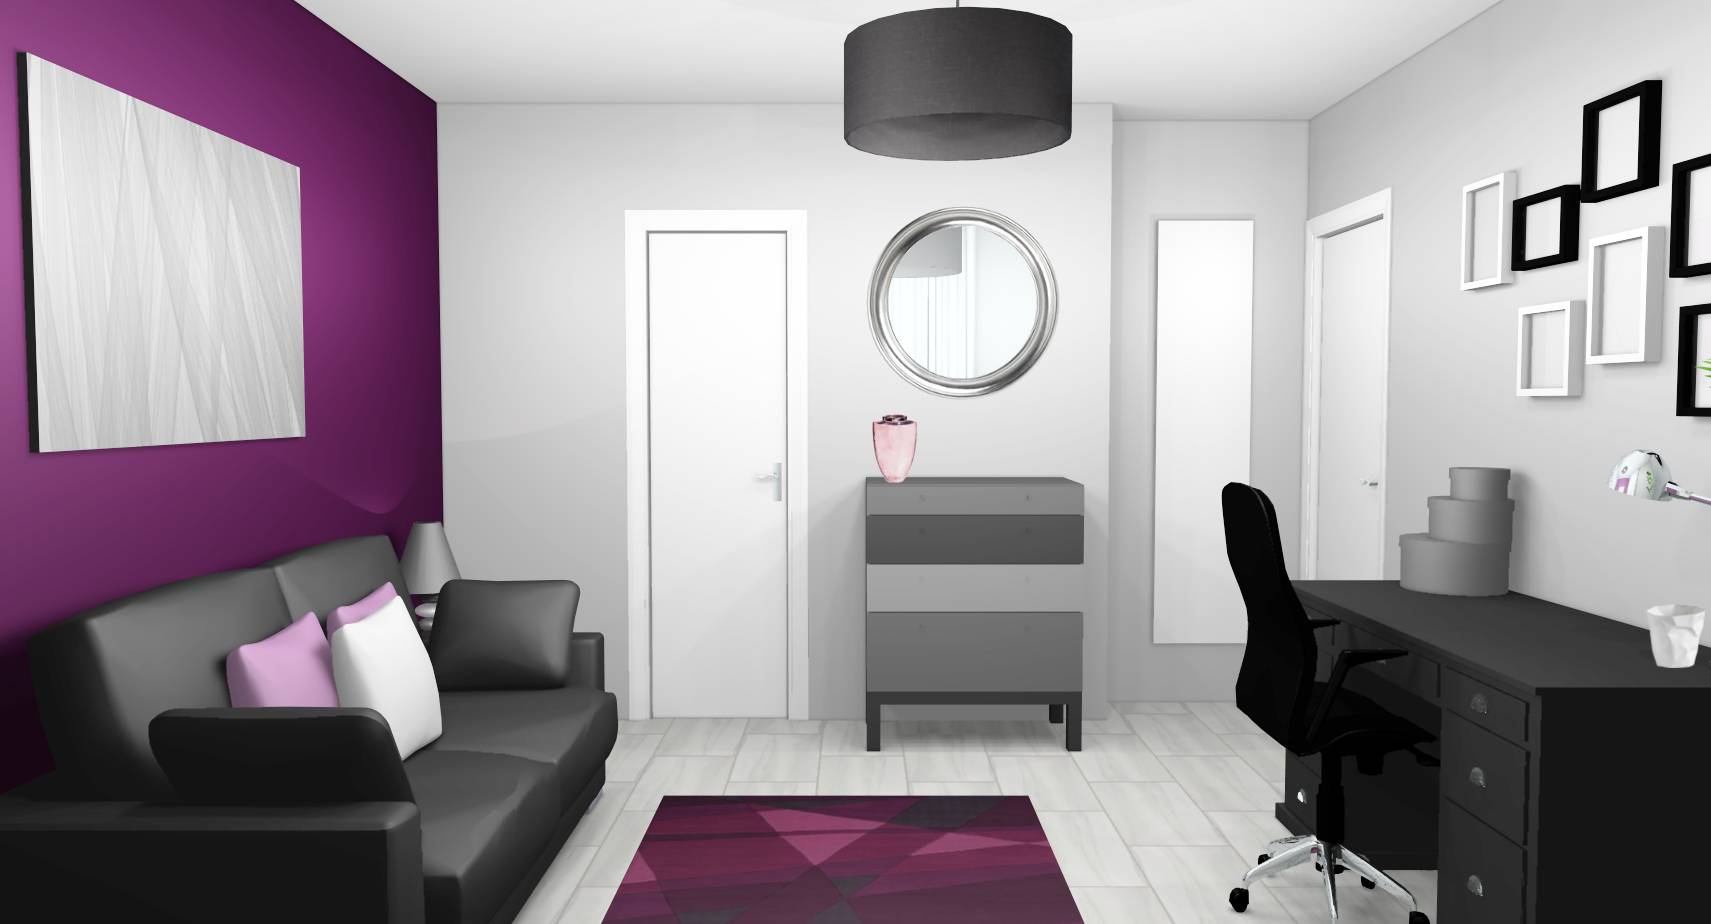 Bureau chambre d'amis prune grise sol marbre bureau coquille tapis design violet touches mauves